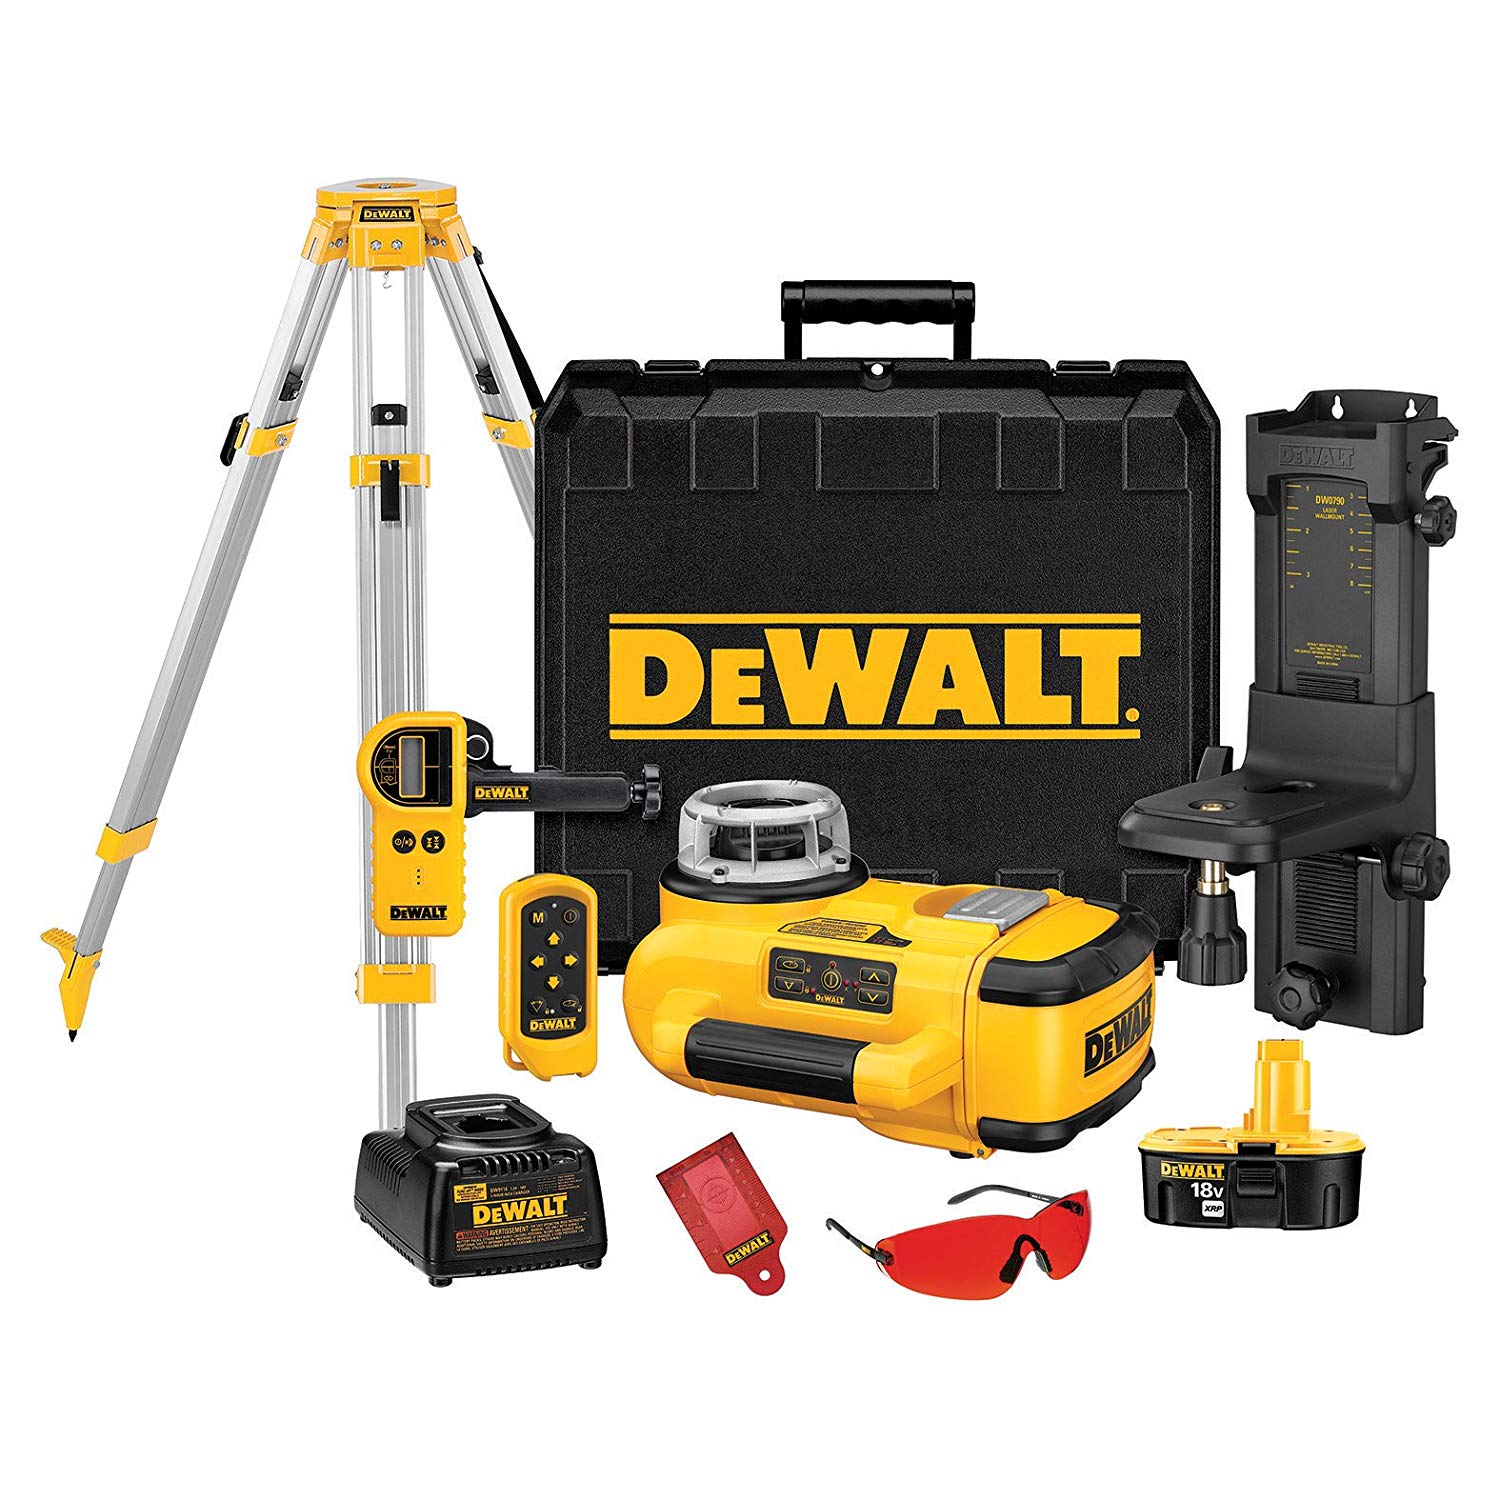 DEWALT-DW079KDT-18-Volt-Self-Leveling-Rotary-Laser-Kit